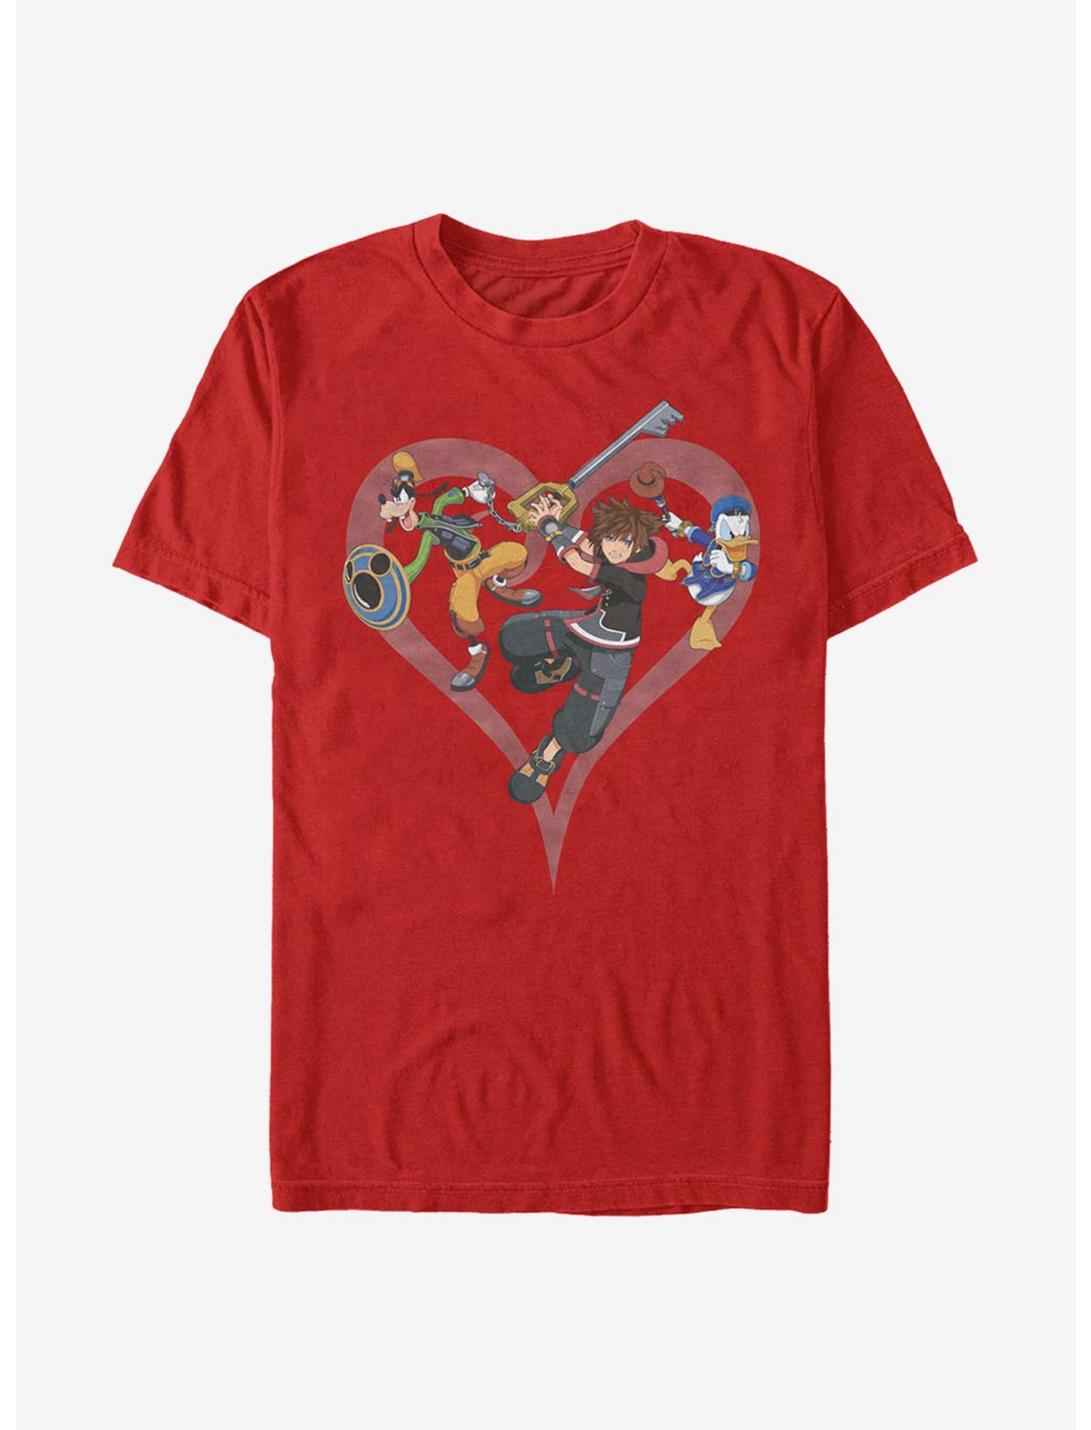 Disney Kingdom Hearts Sora Goofy Donald T-Shirt, RED, hi-res